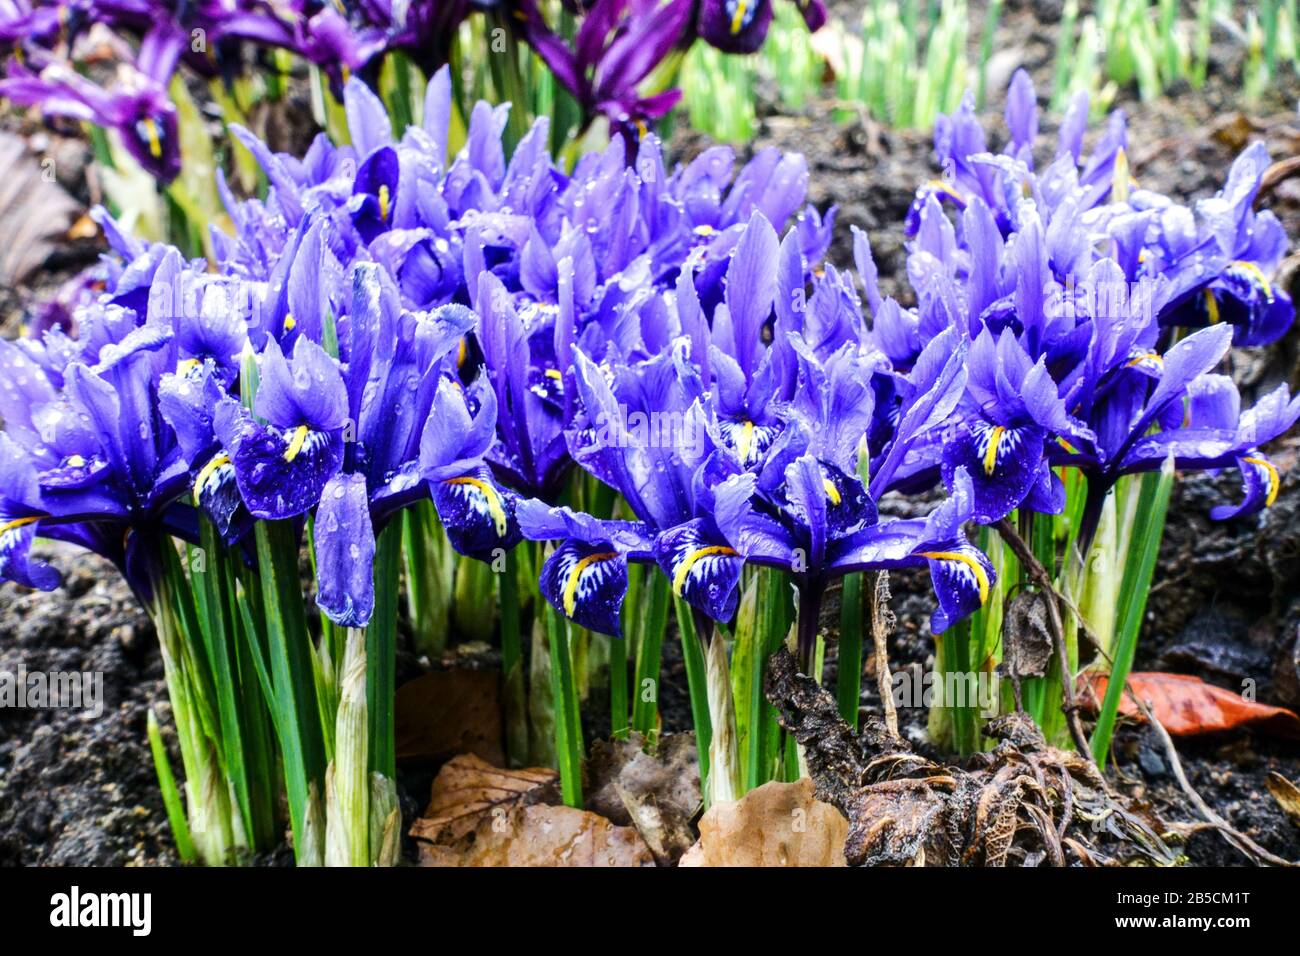 Group of blue dwarf irises "Harmony" Stock Photo